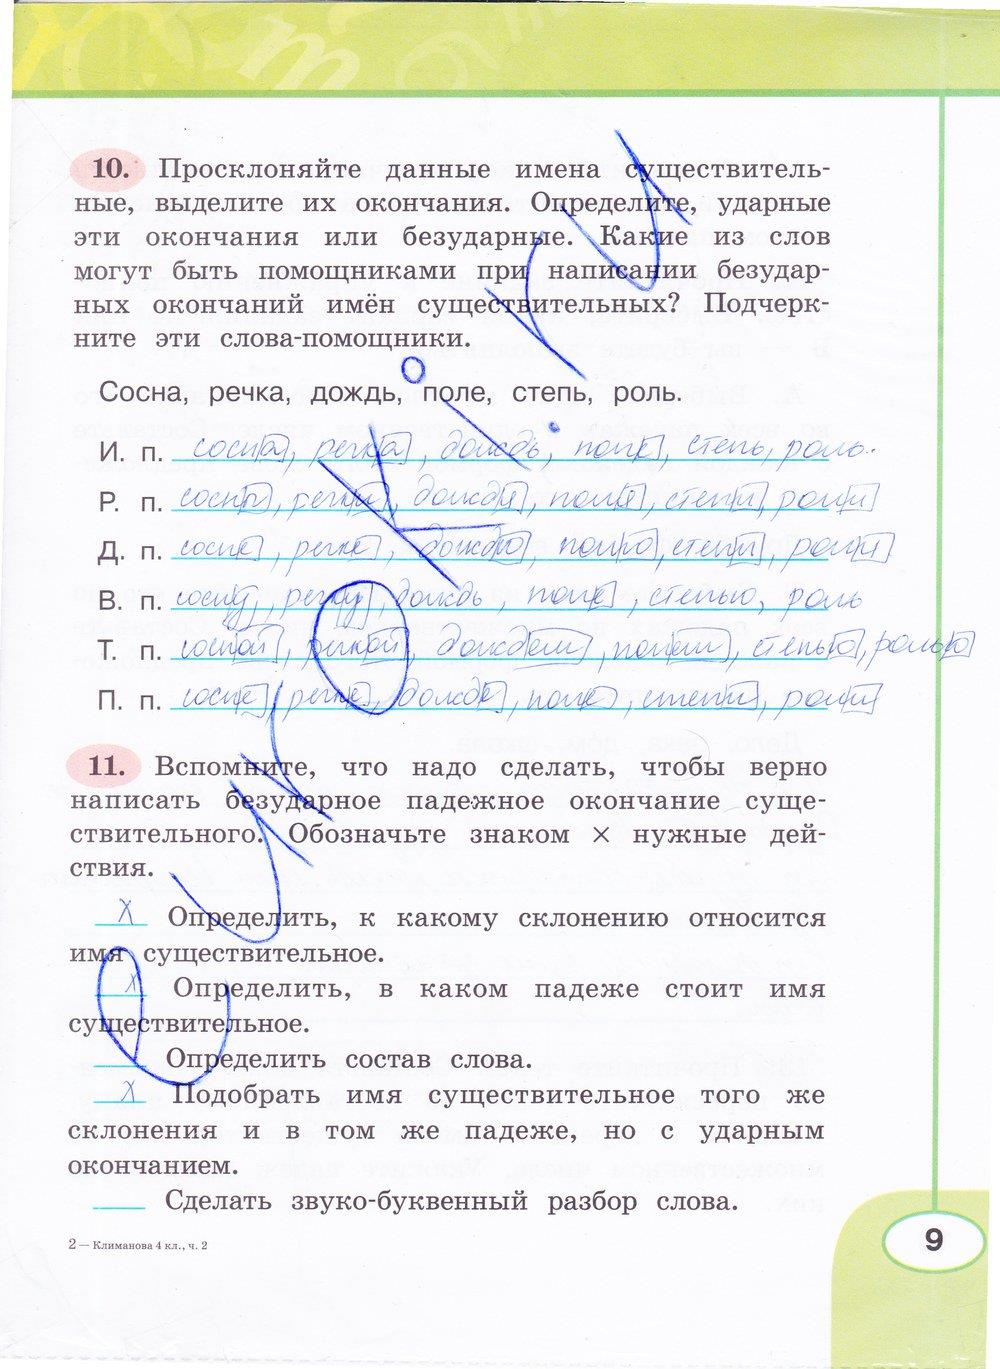 гдз 4 класс рабочая тетрадь часть 2 страница 9 русский язык Климанова, Бабушкина